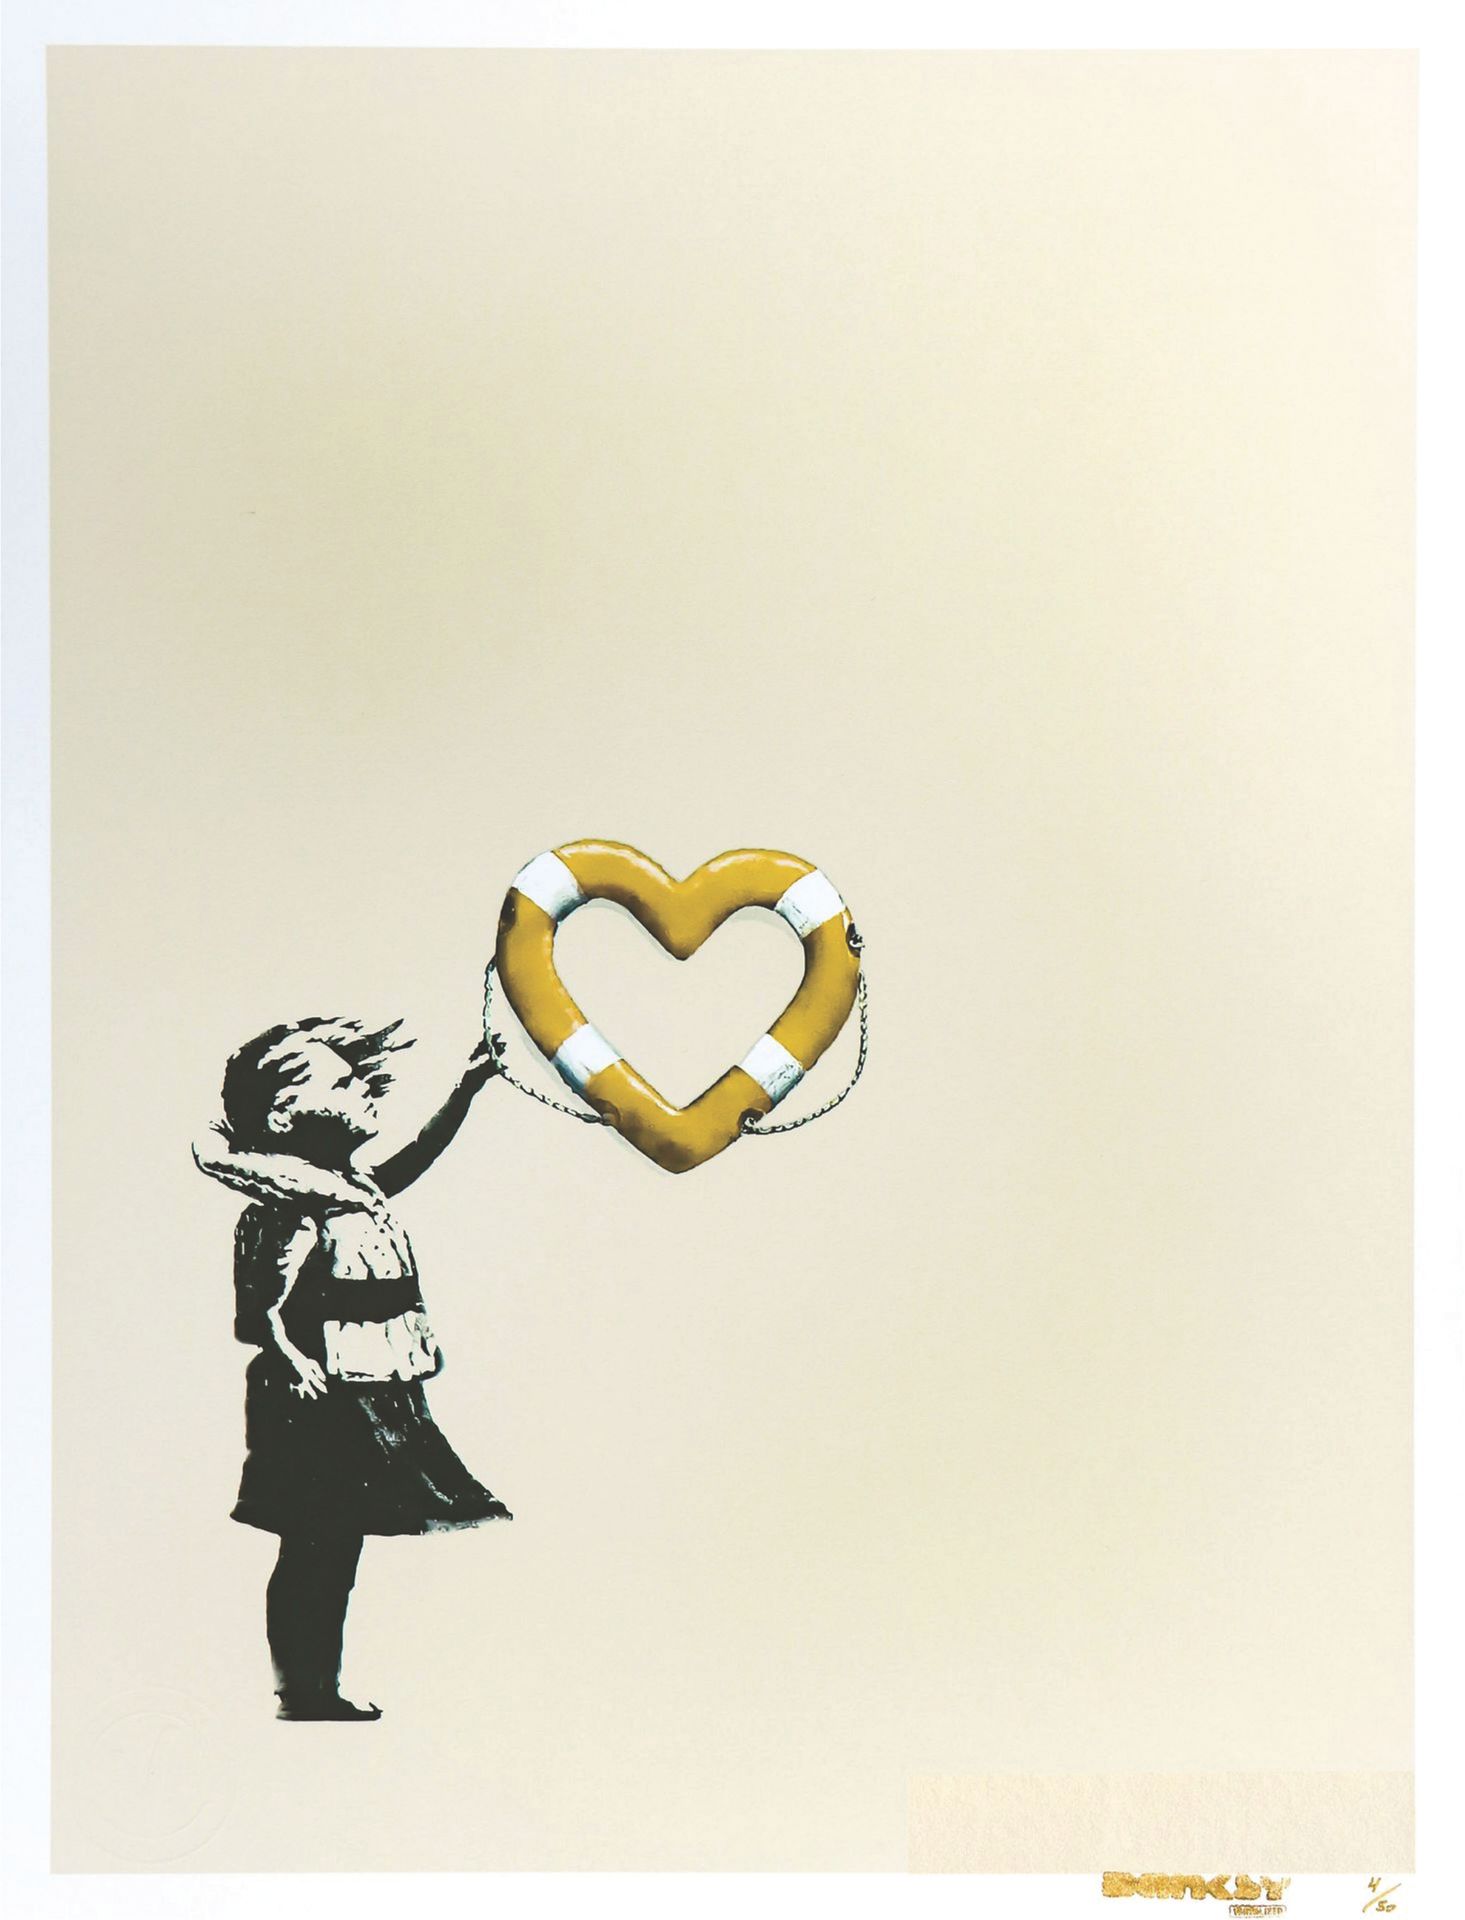 Null 班克西（1974年），在 "后现代破坏者 "之后

有心形花车的女孩

(黄金版)

纸上丝印

右下方盖有4/50的印章和编号

44 x 33 c&hellip;